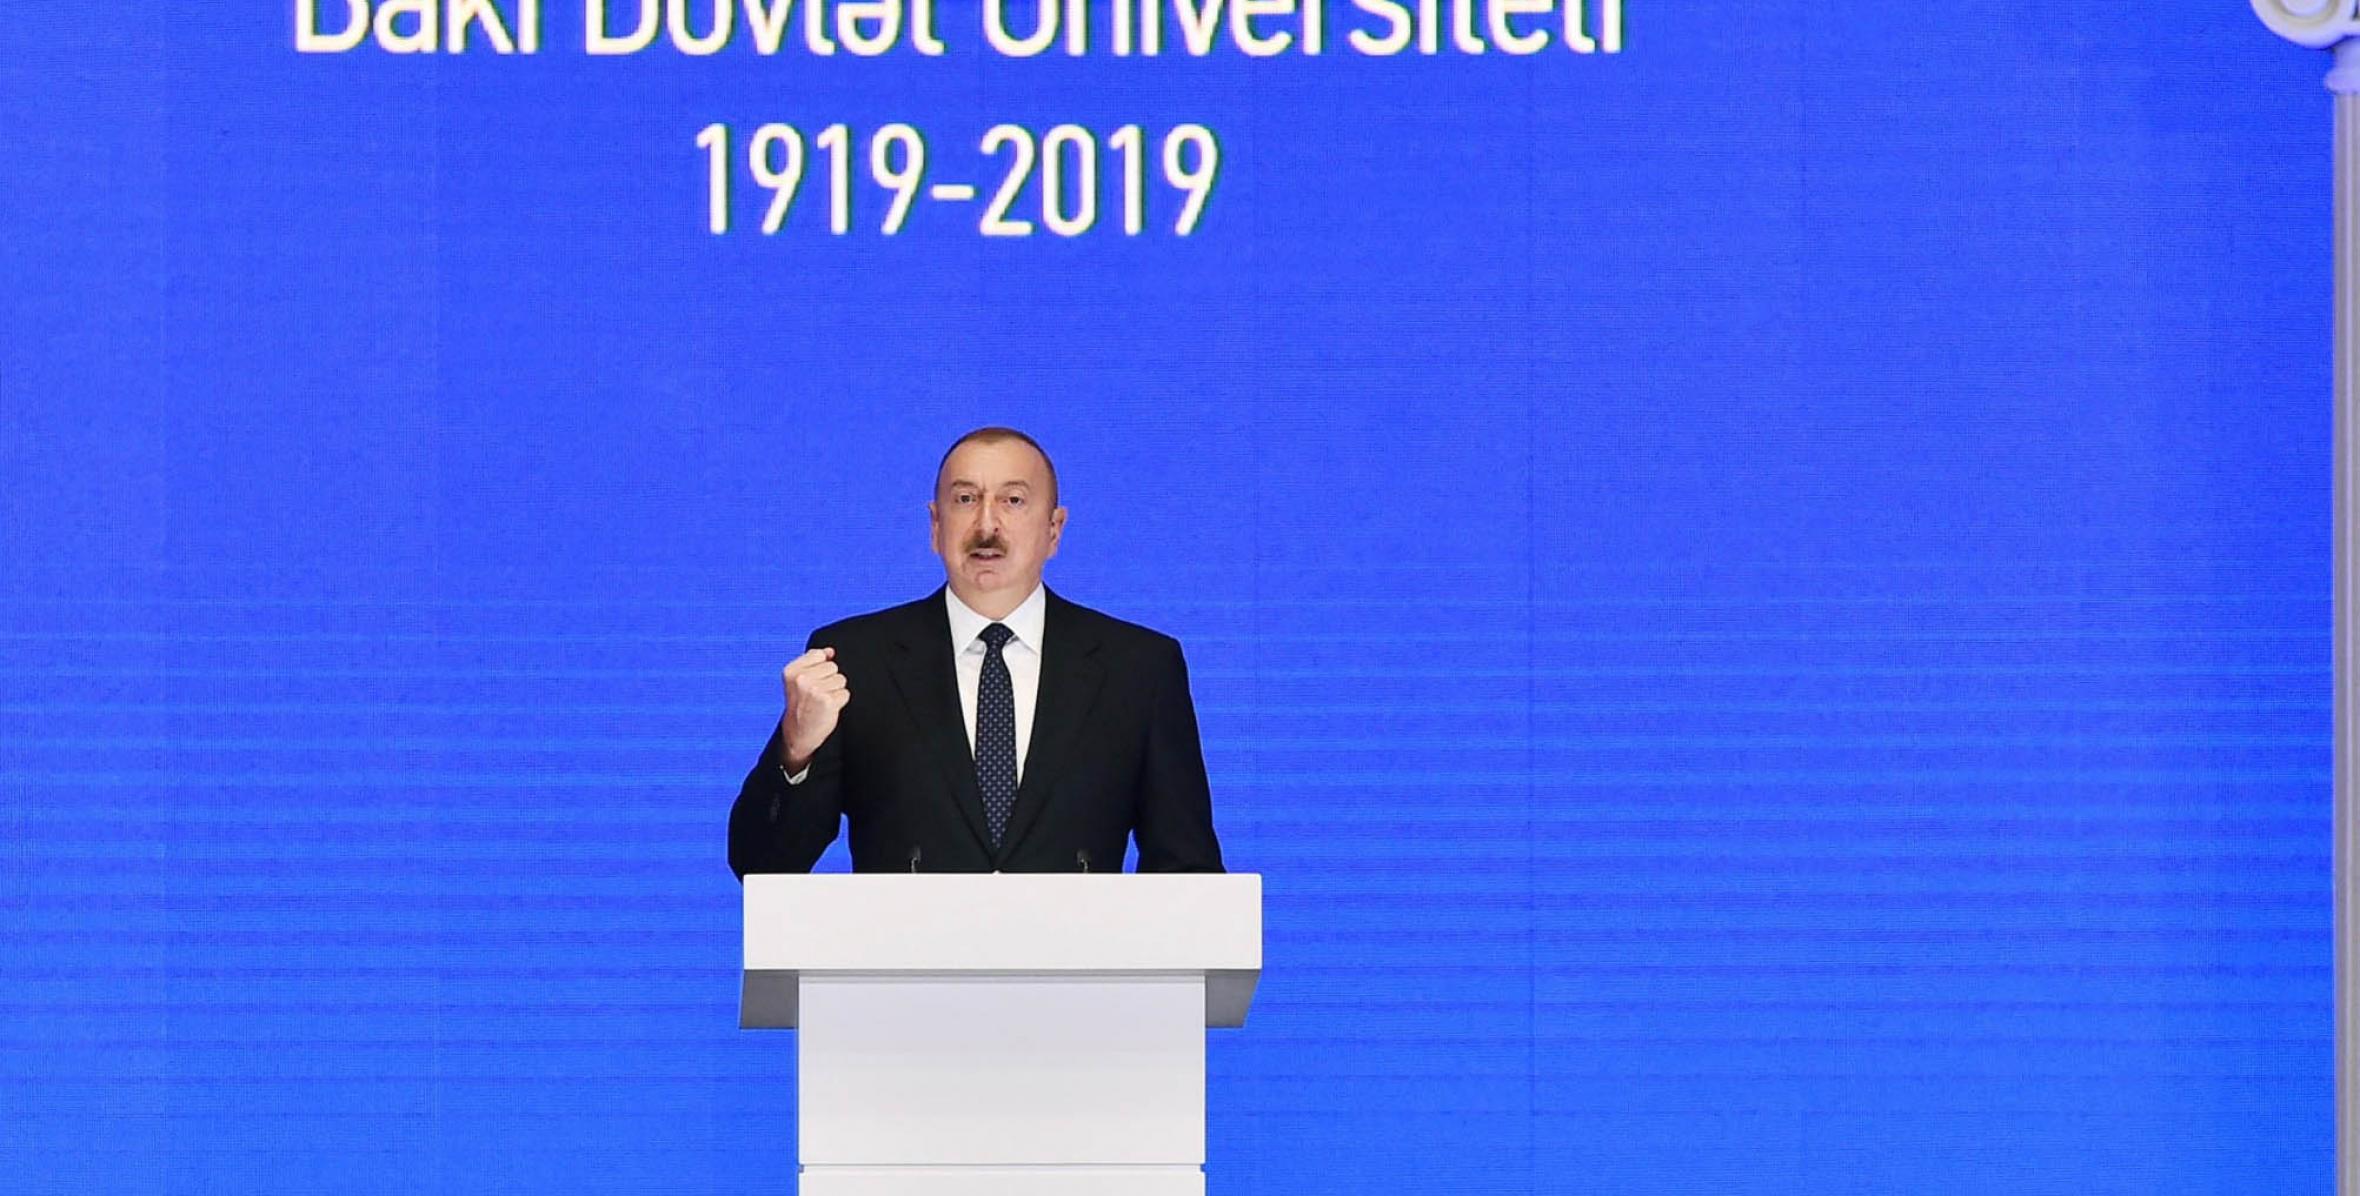 Речь Ильхама Алиева на церемонии, проходившей по случаю 100-летнего юбилея Бакинского государственного университета